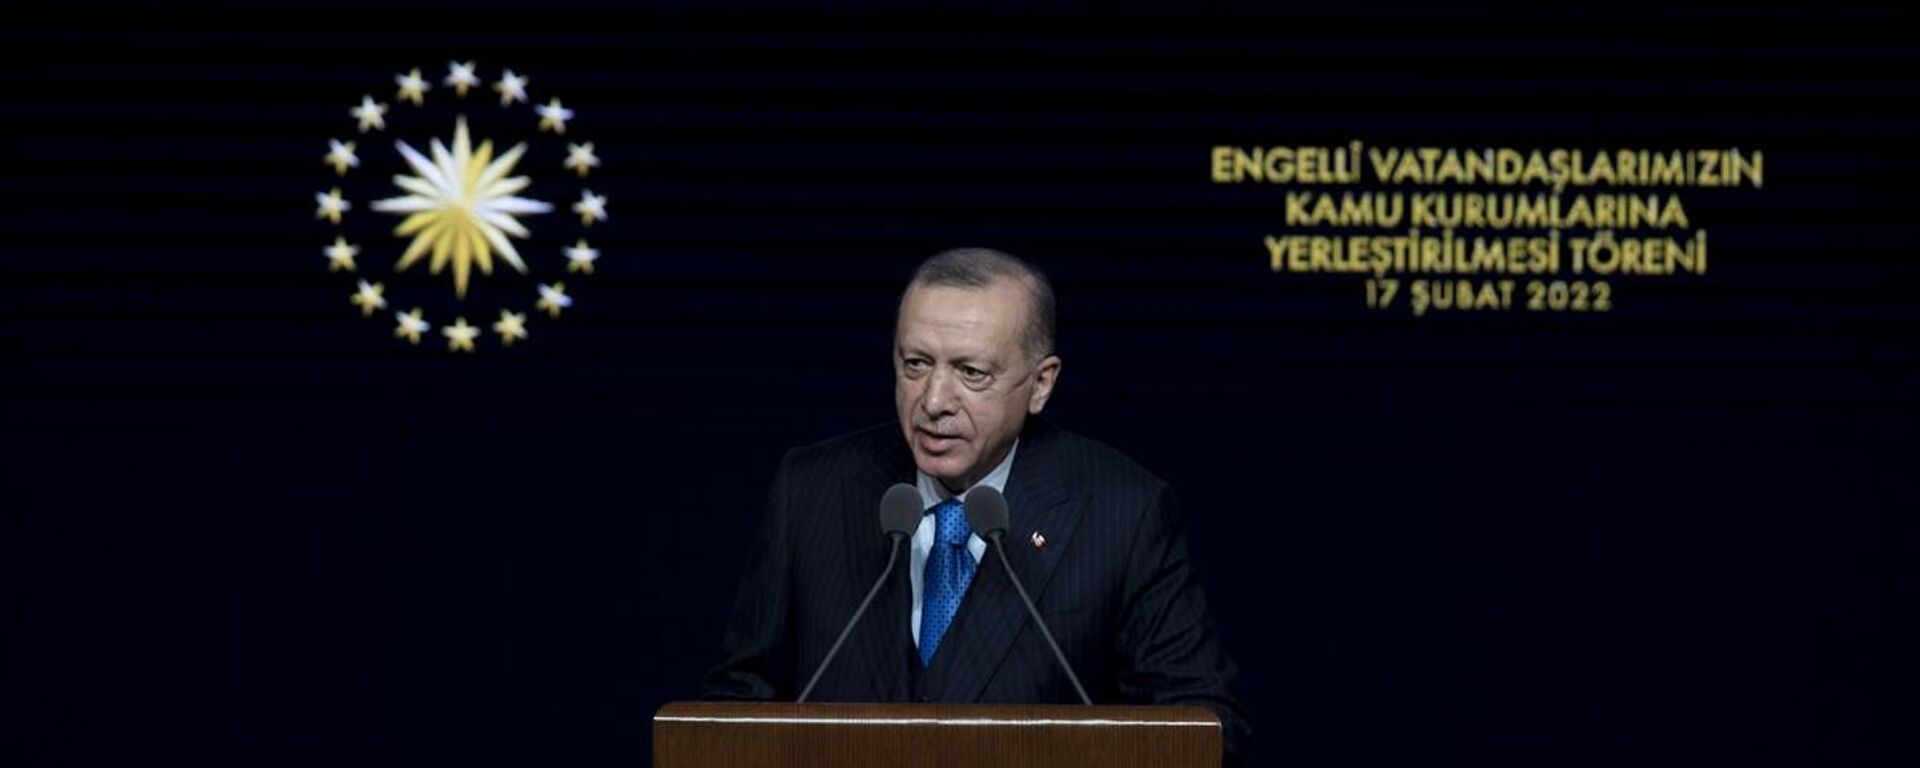 Cumhurbaşkanı Erdoğan, Engelli Memurlar Ataması programında konuştu. - Sputnik Türkiye, 1920, 17.02.2022